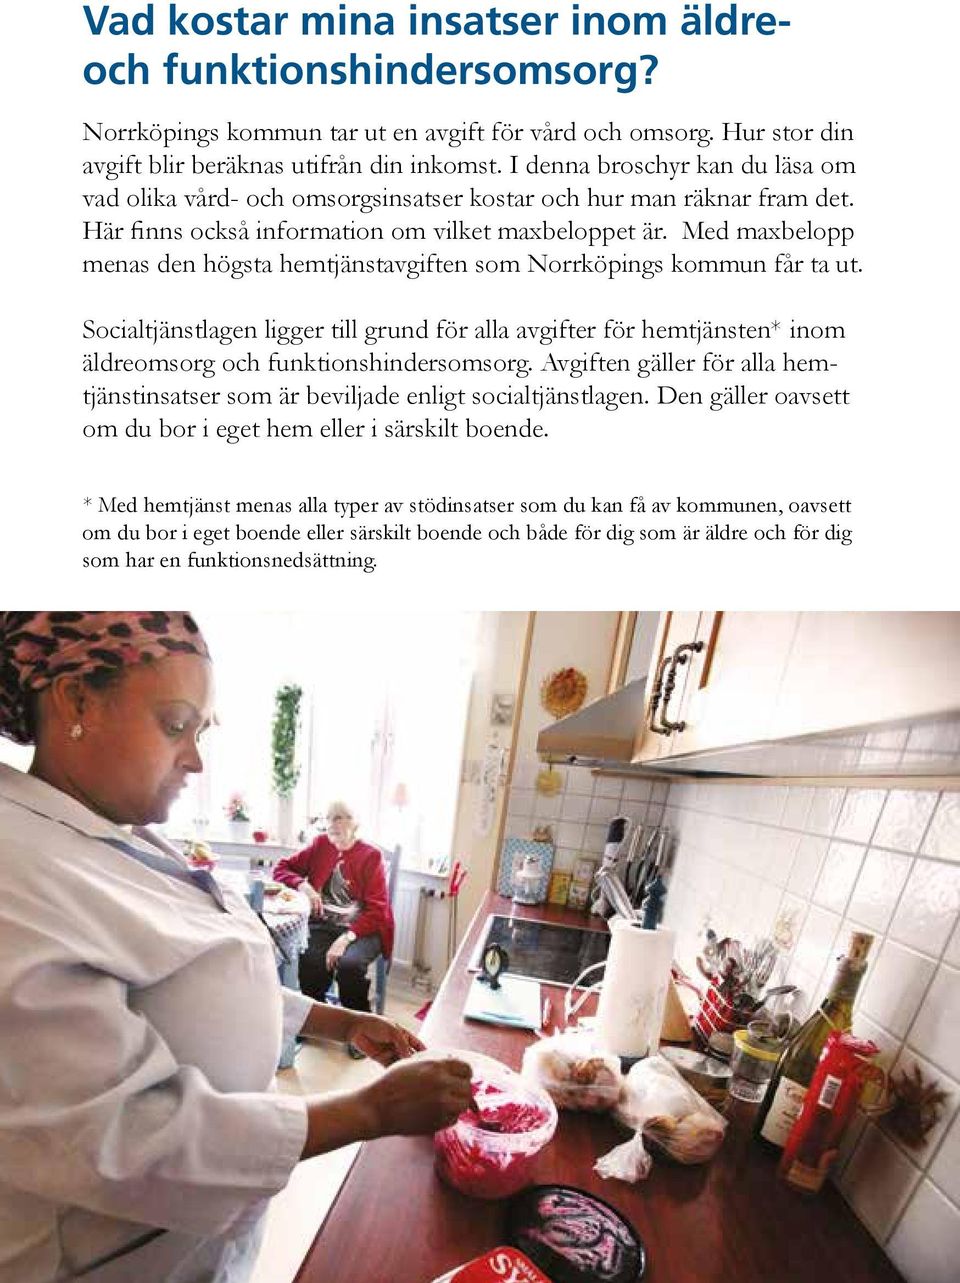 Med maxbelopp menas den högsta hemtjänstavgiften som Norrköpings kommun får ta ut. Socialtjänstlagen ligger till grund för alla avgifter för hemtjänsten* inom äldreomsorg och funktionshindersomsorg.